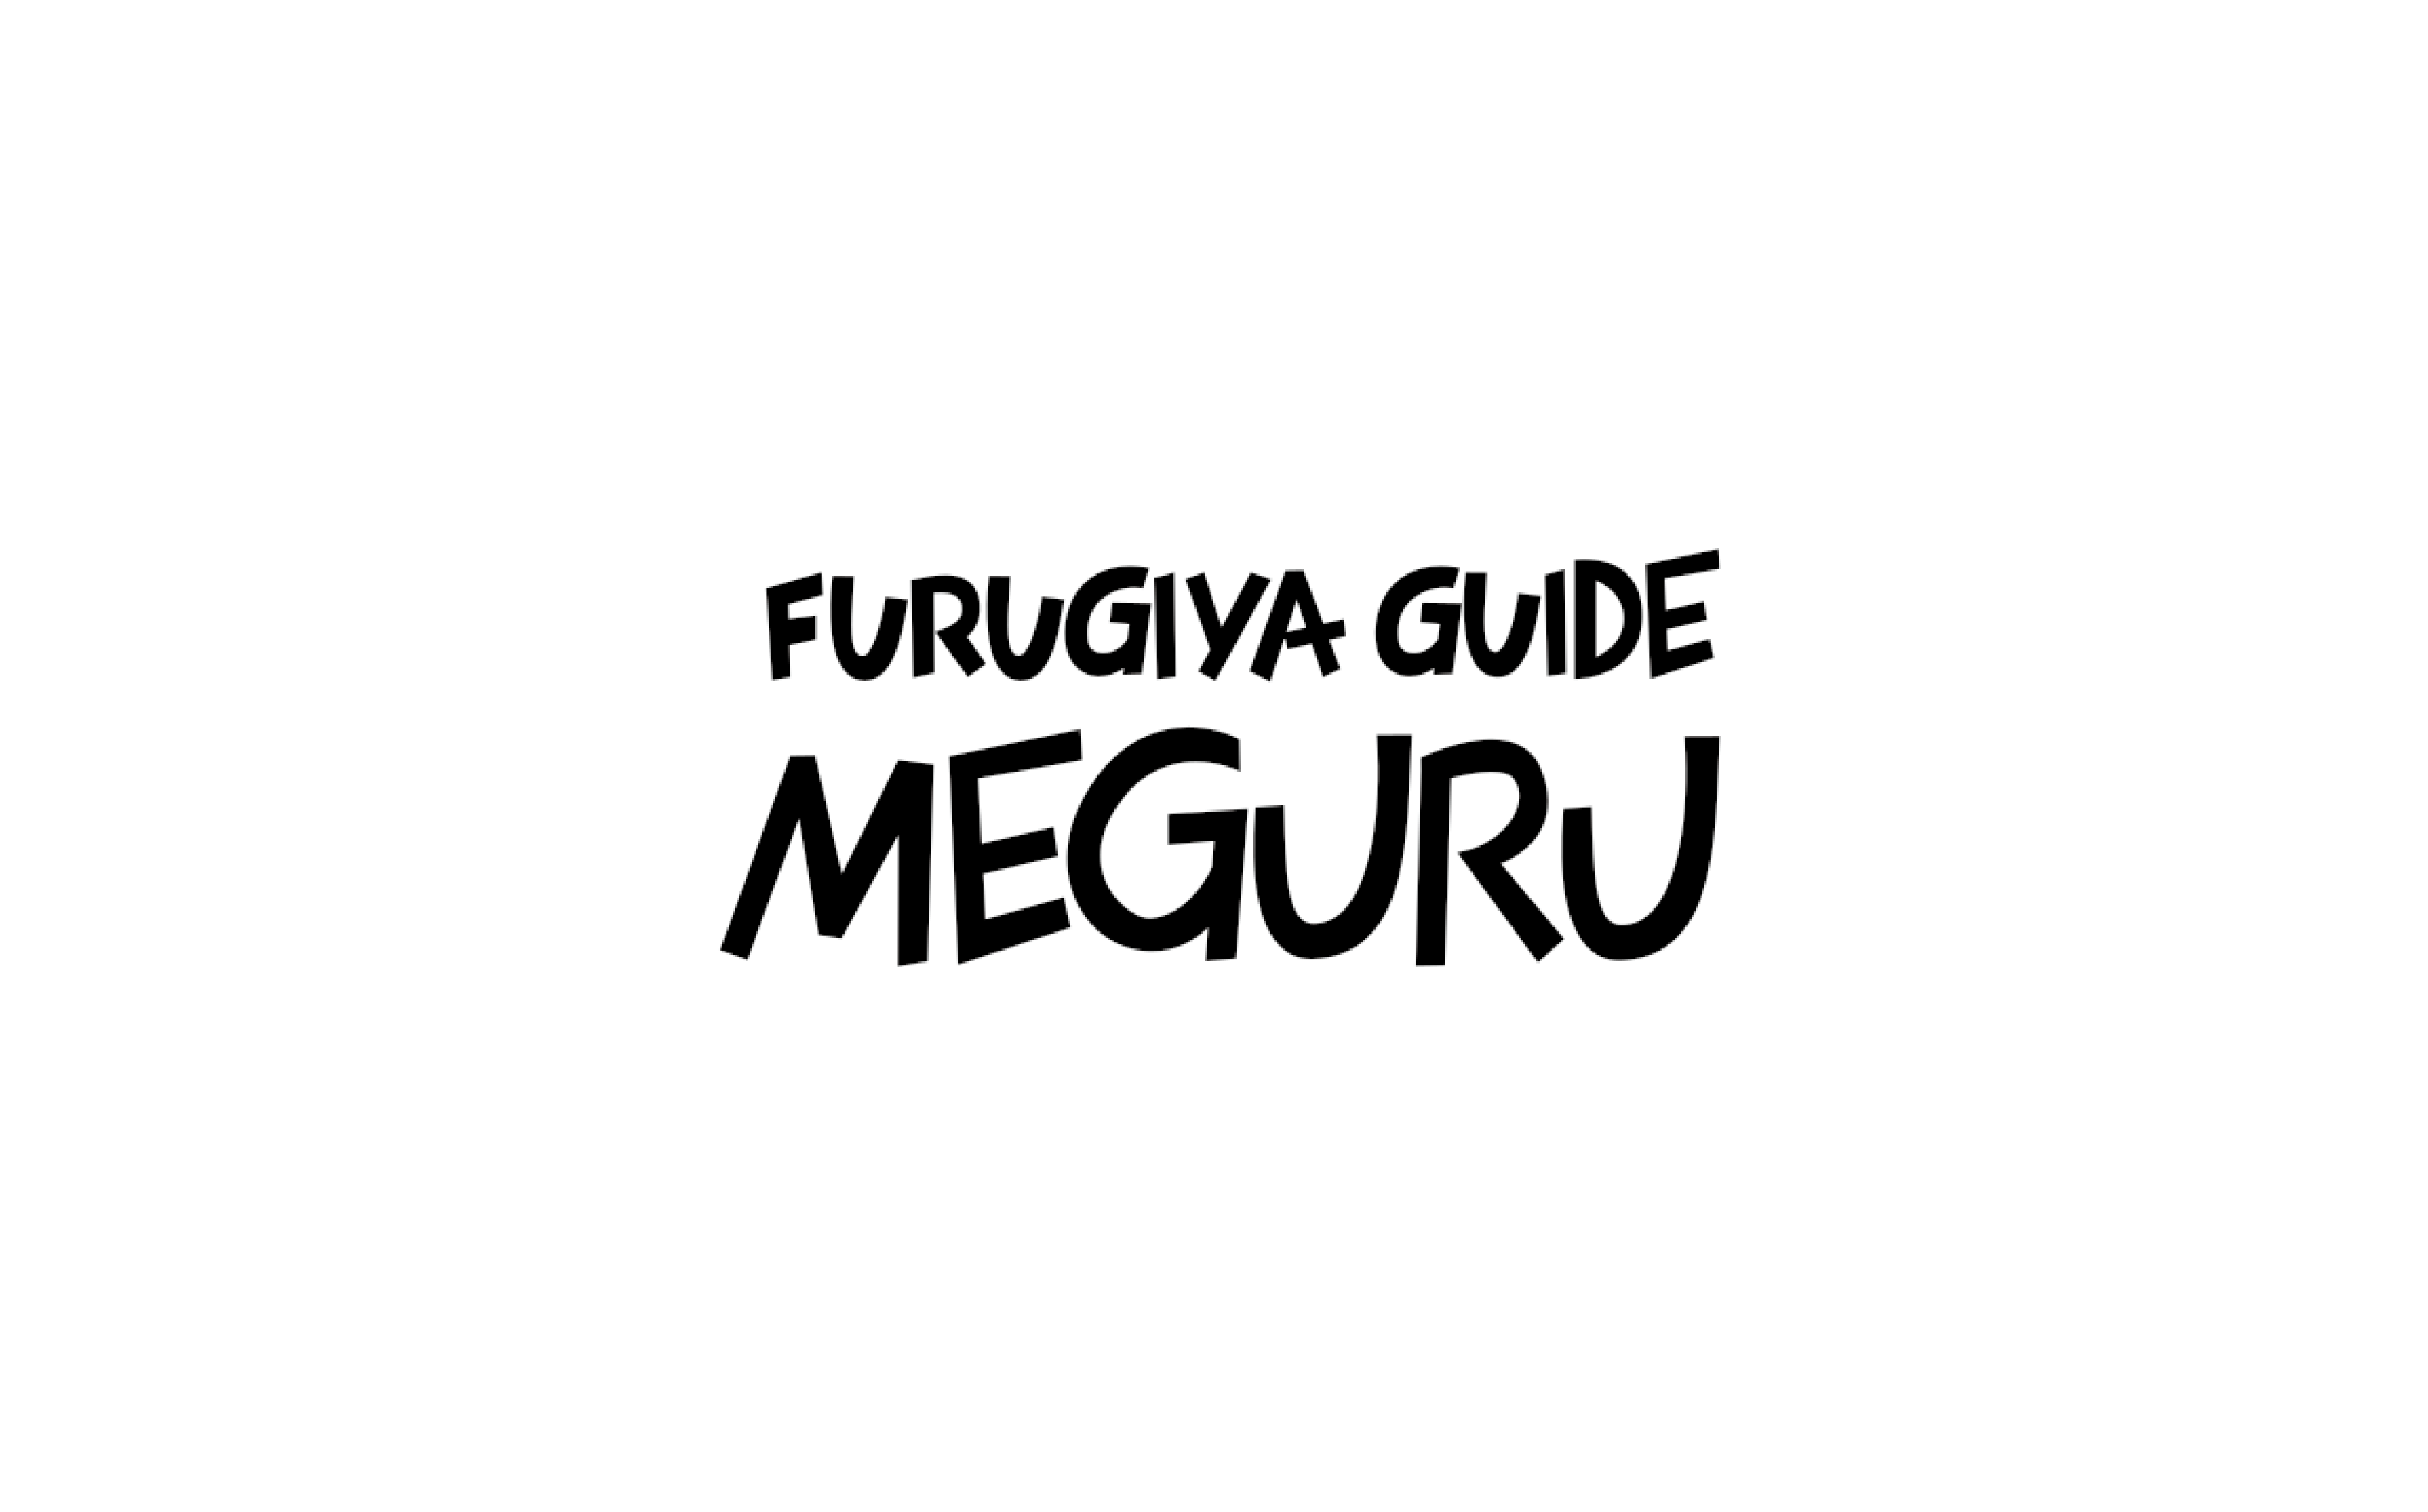 Meguru